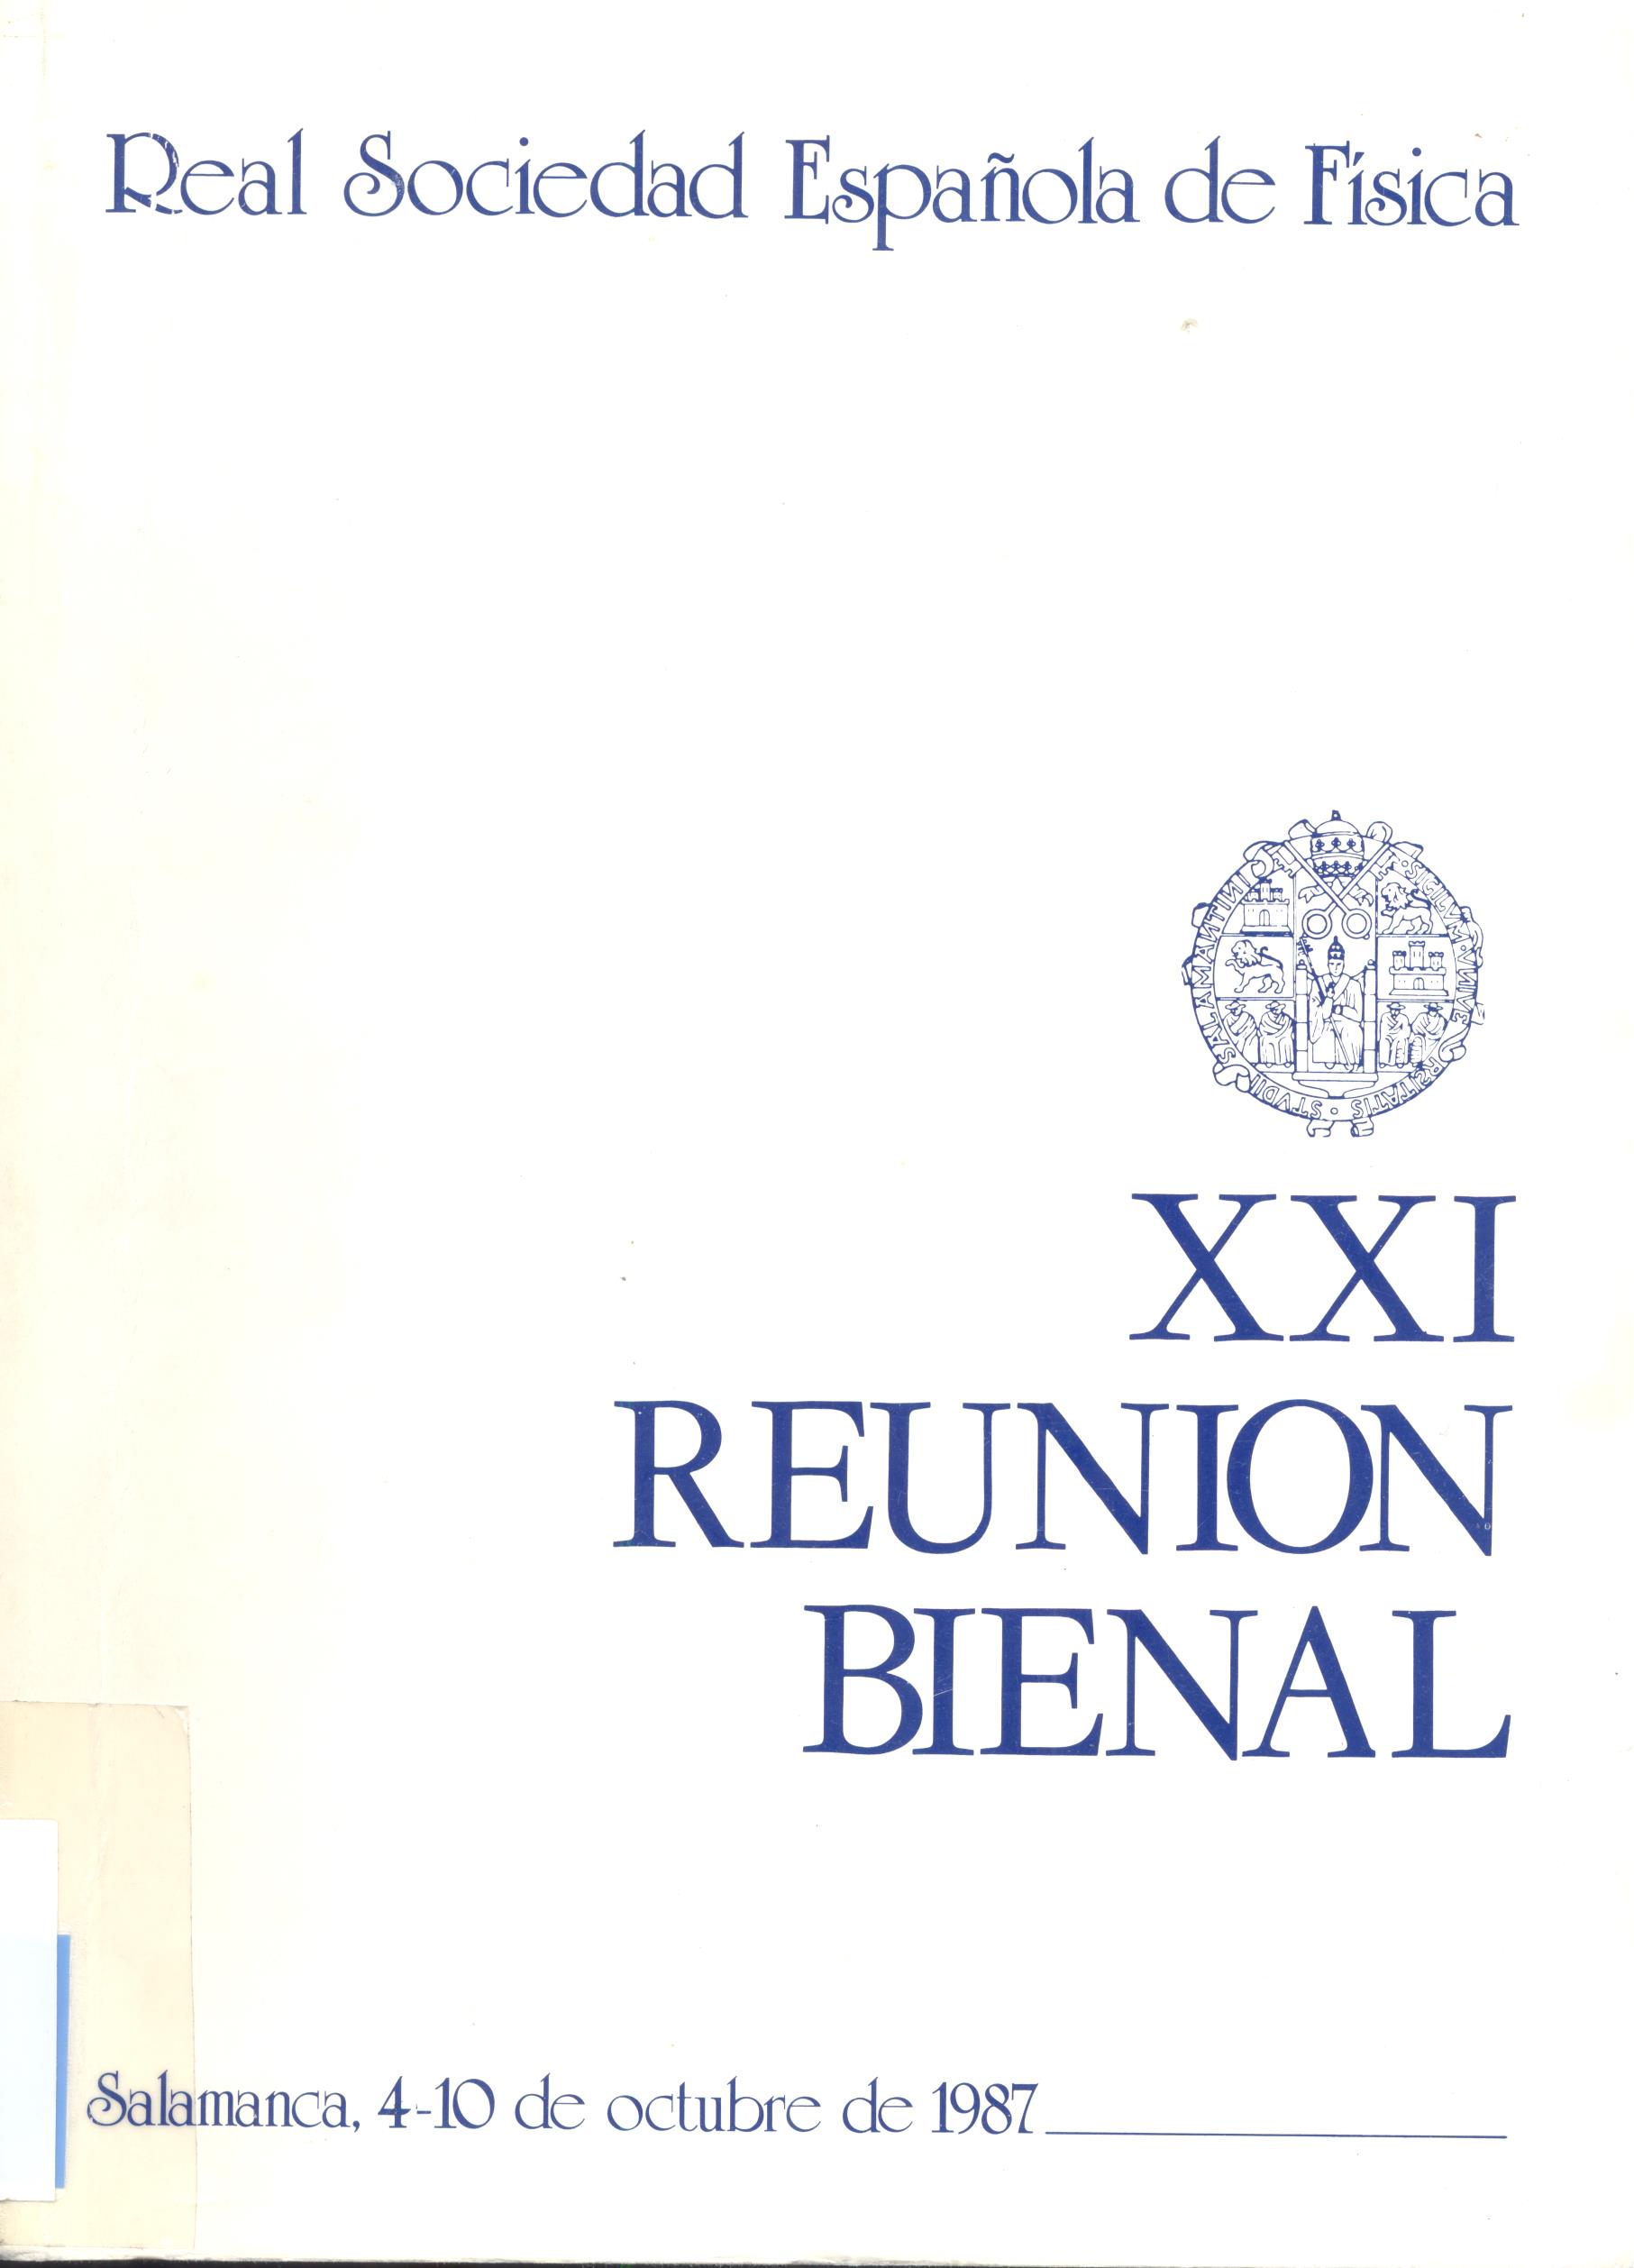 Imagen de portada del libro XXI Reunión bienal de la Real Sociedad española de Física